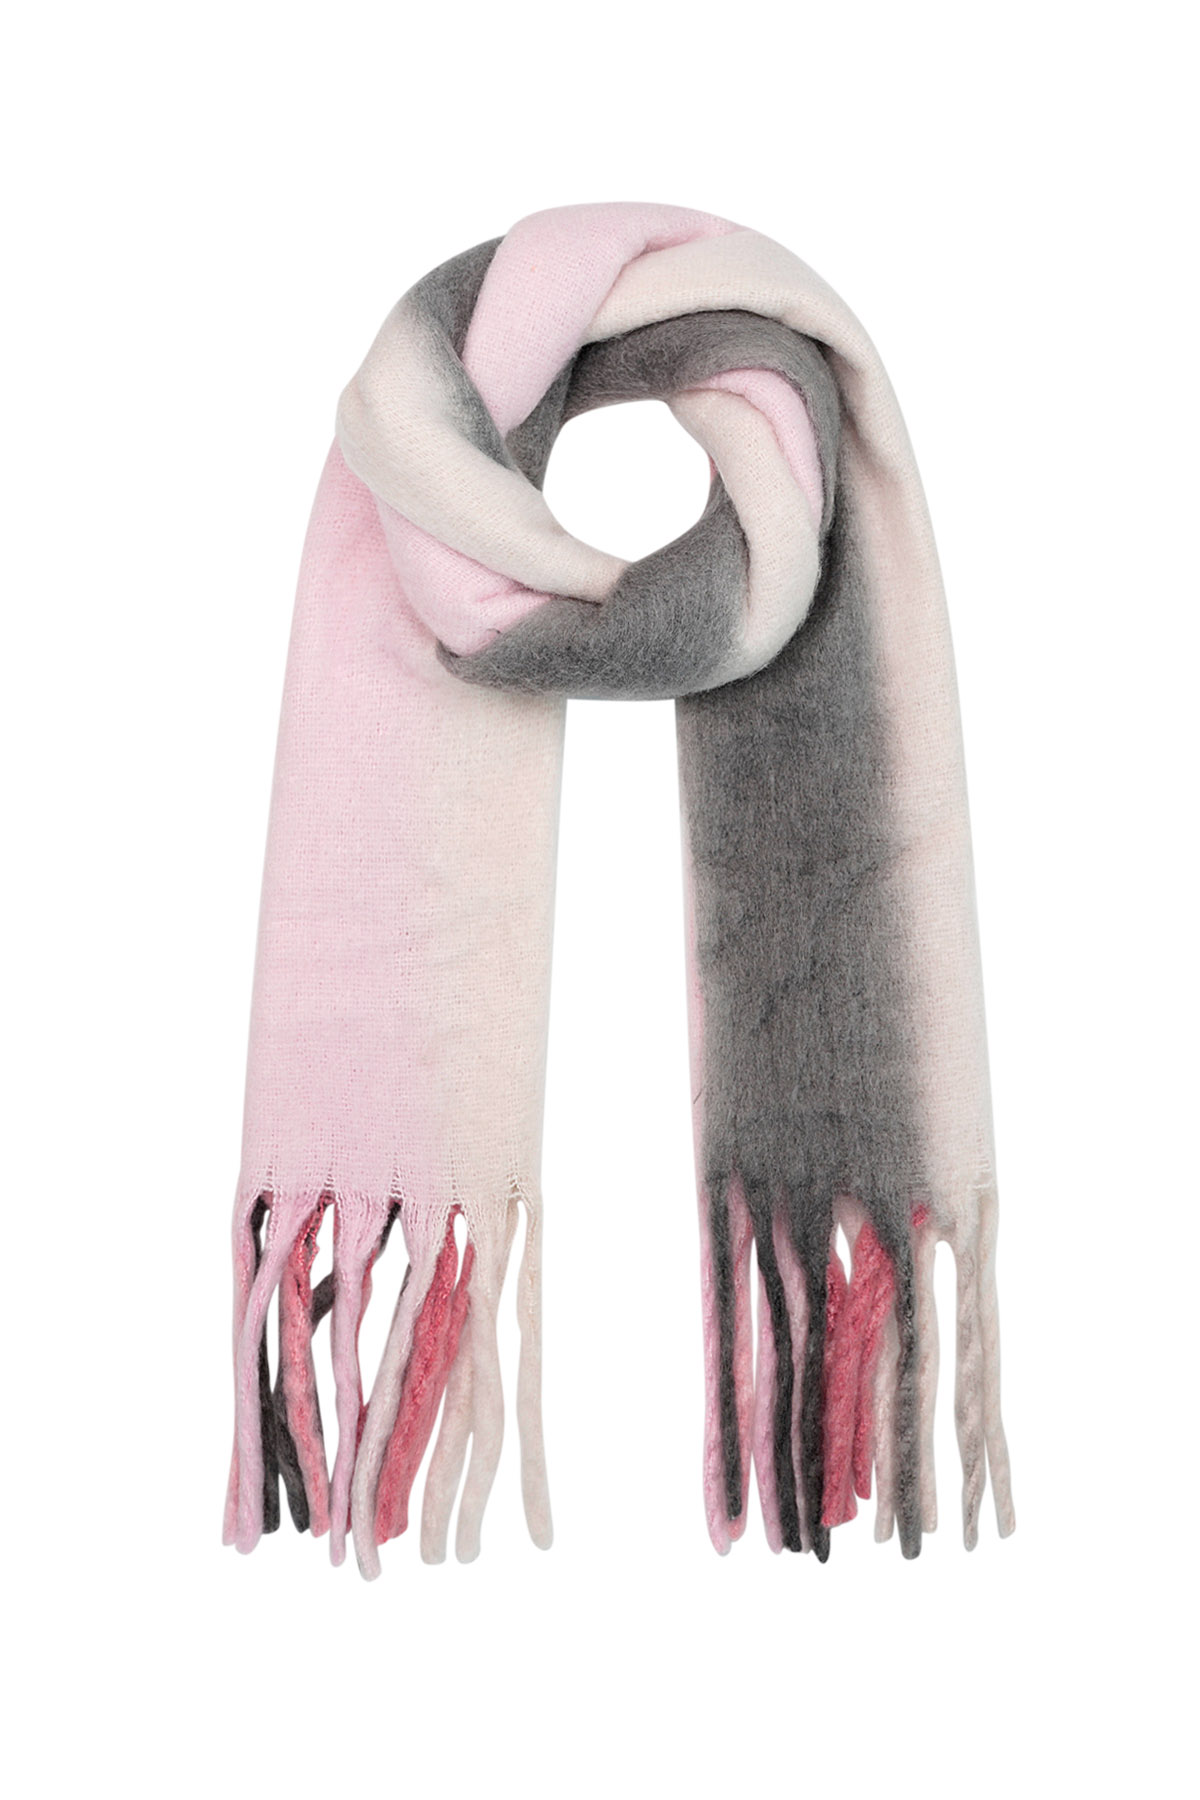 Sciarpa invernale colori sfumati rosa/grigio Poliestere 